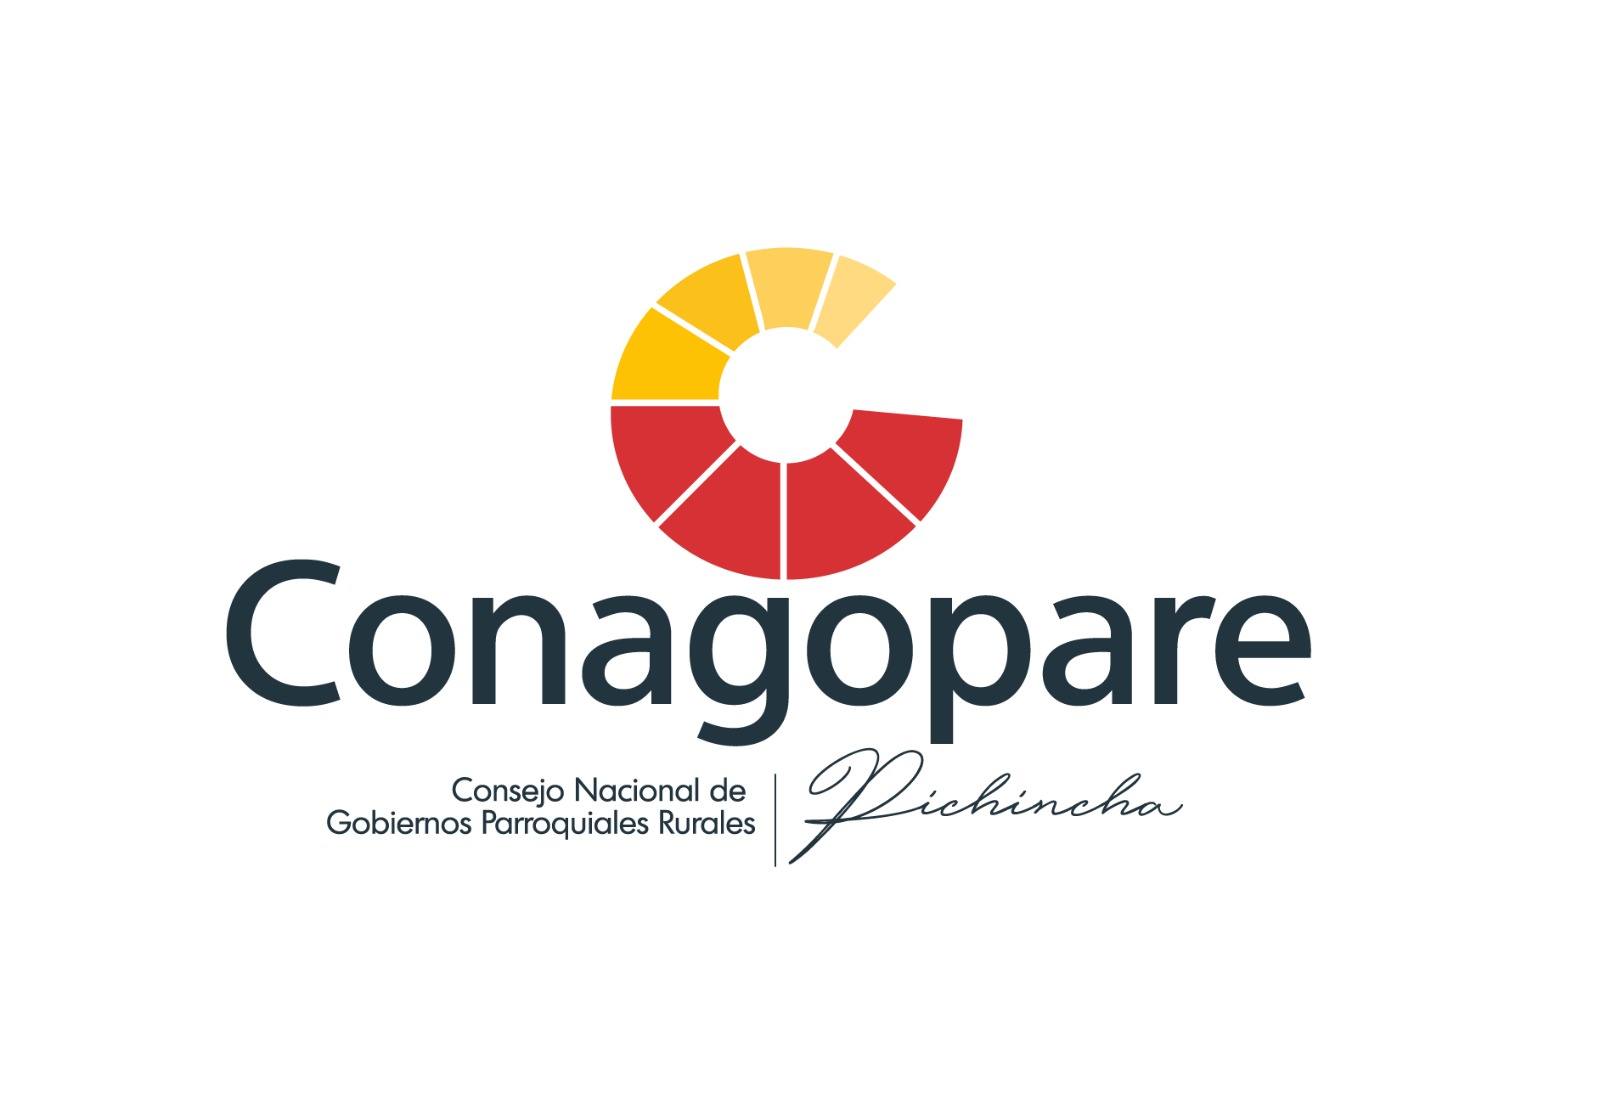 Logo Conagopare